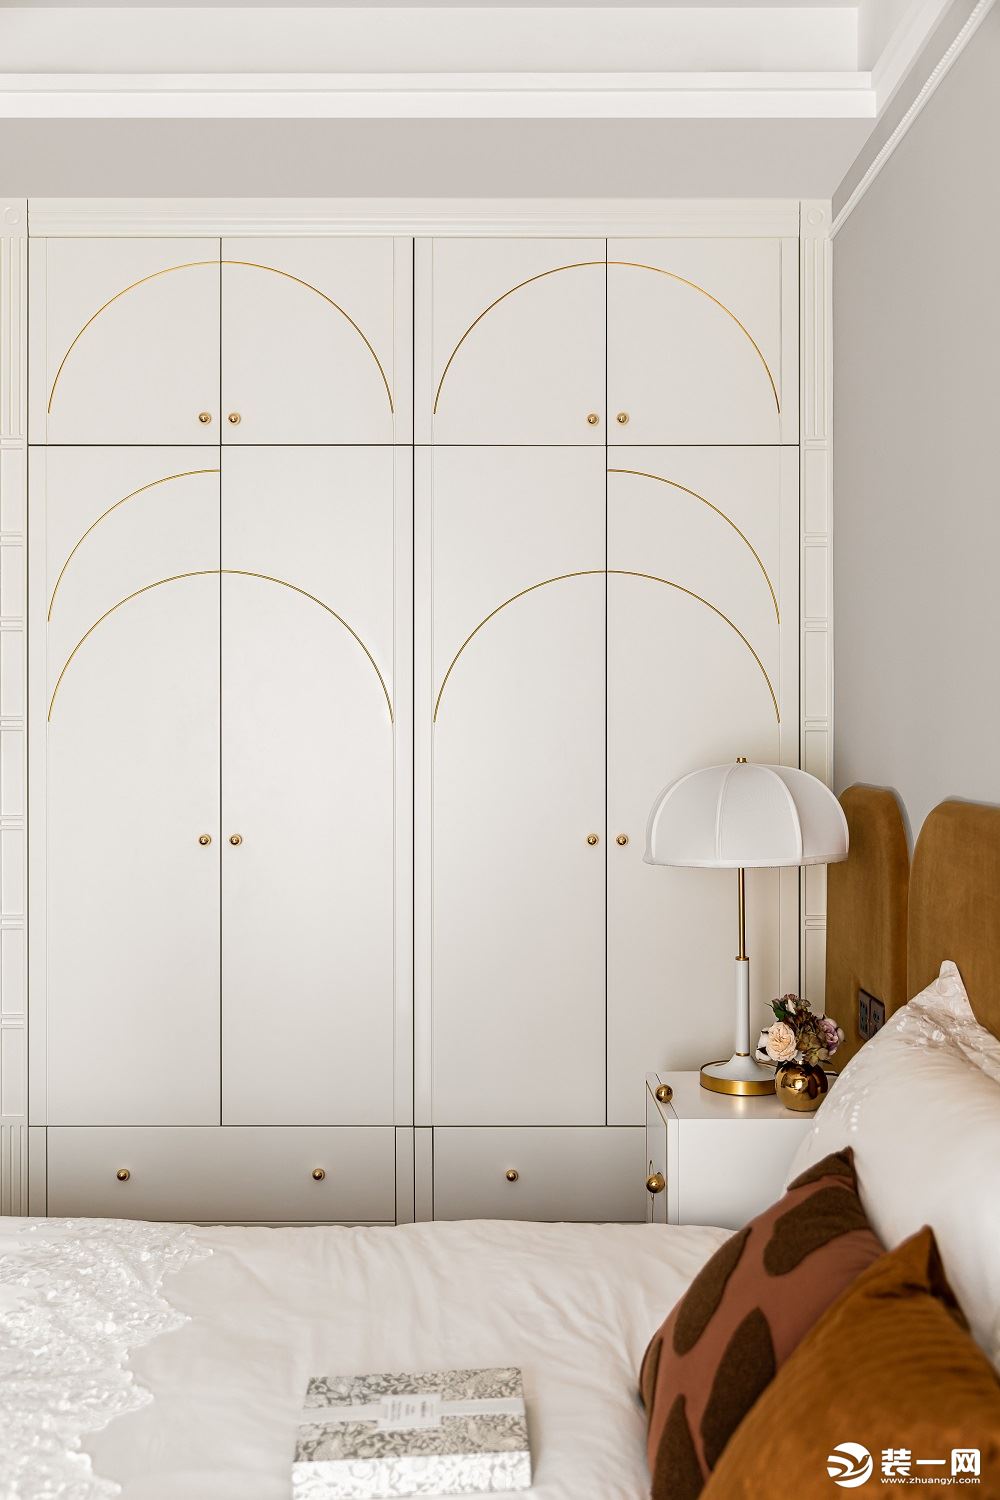 米白色柜门镶嵌极窄金属条极具个性与观赏性.